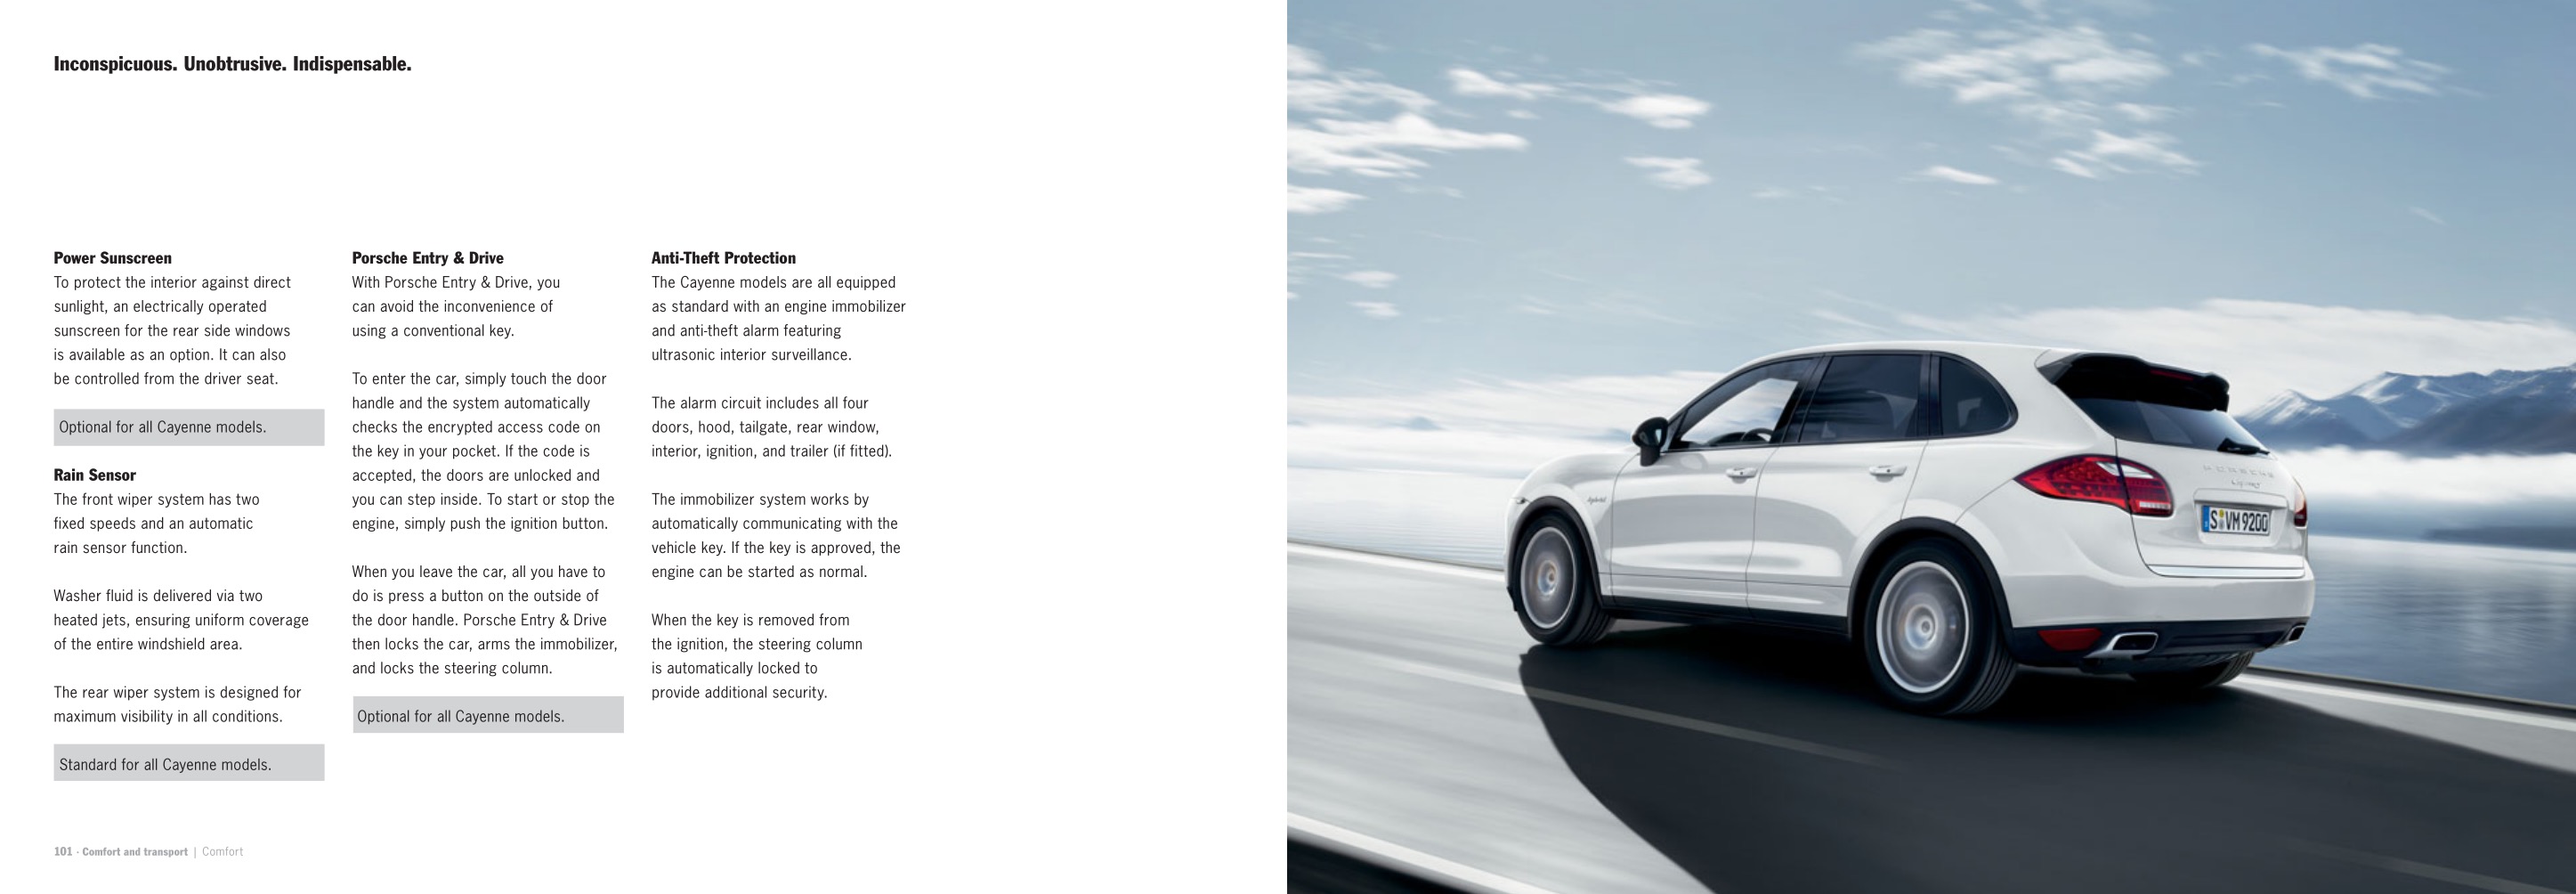 2013 Porsche Cayenne Brochure Page 50